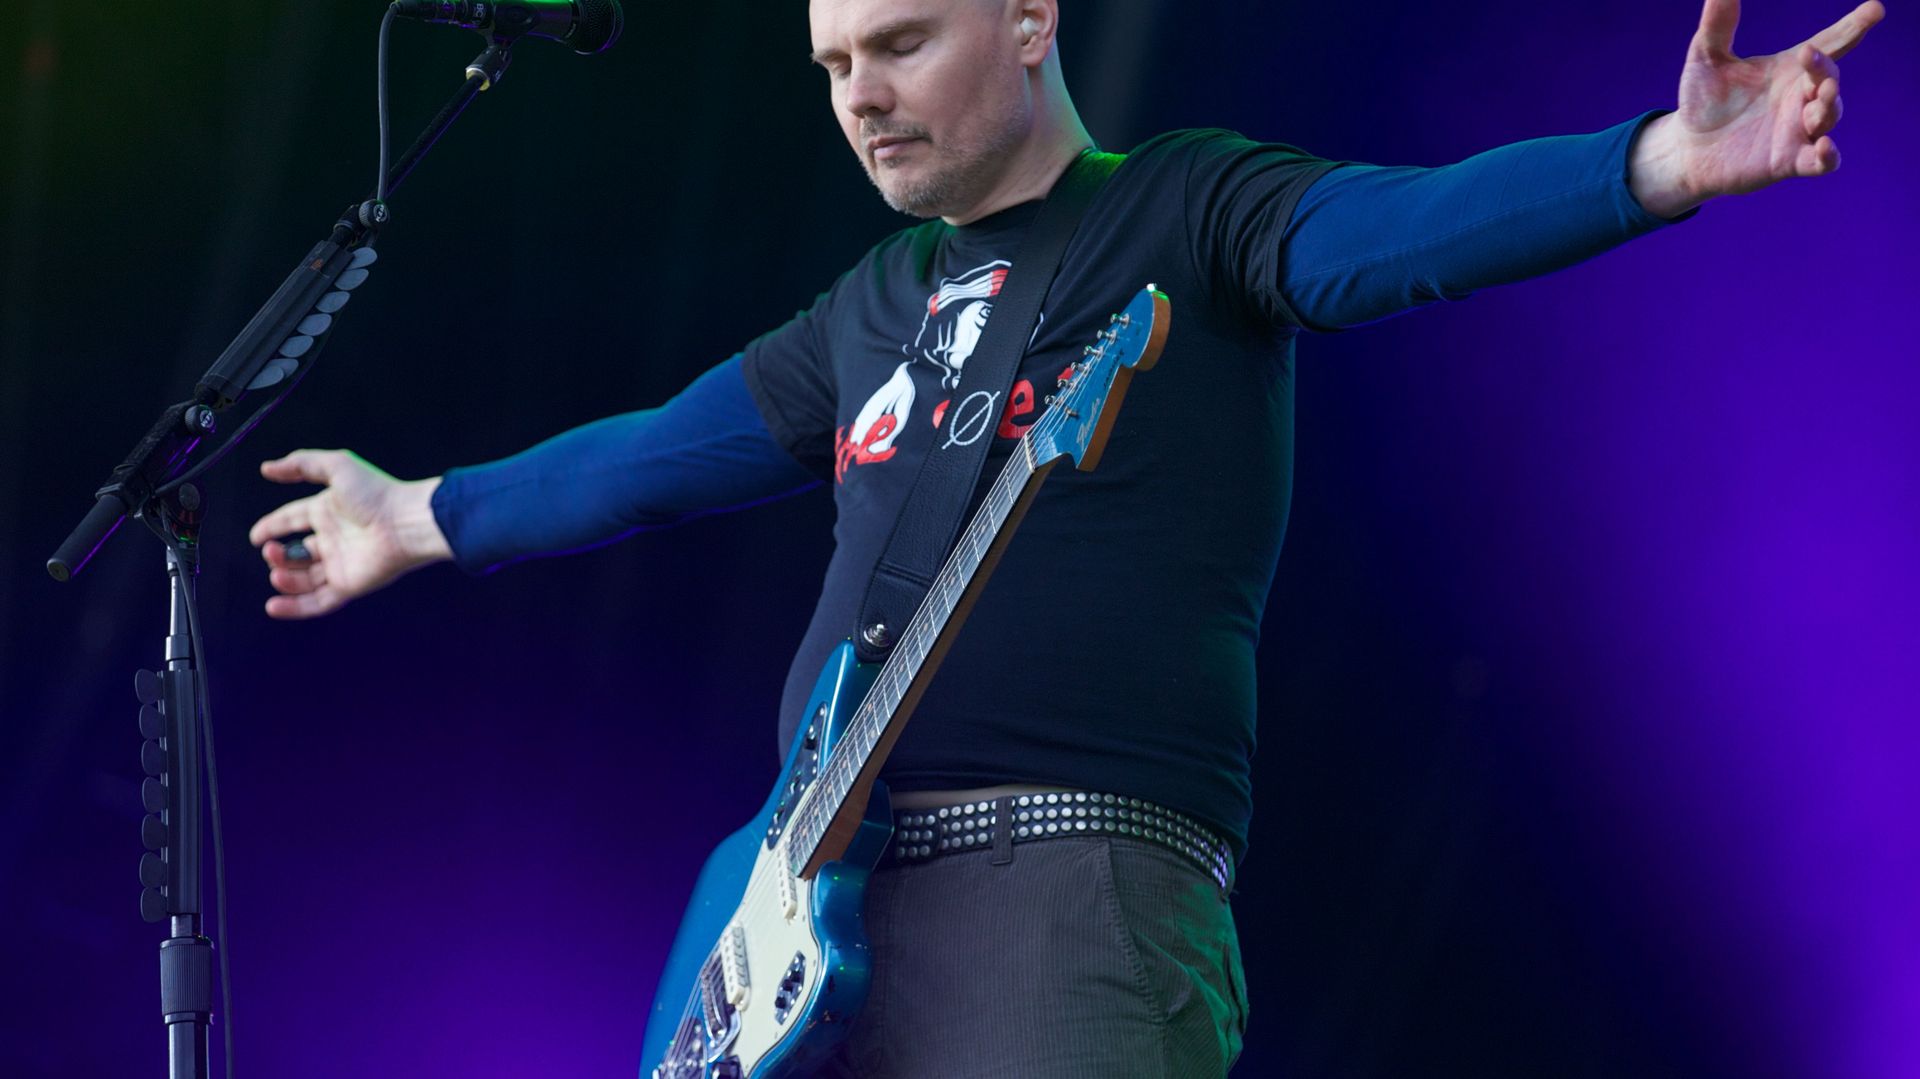 Billy Corgan et son groupe les Smashing Pumpkins donneront une série de concerts à l'occasion des 30 ans de la formation.